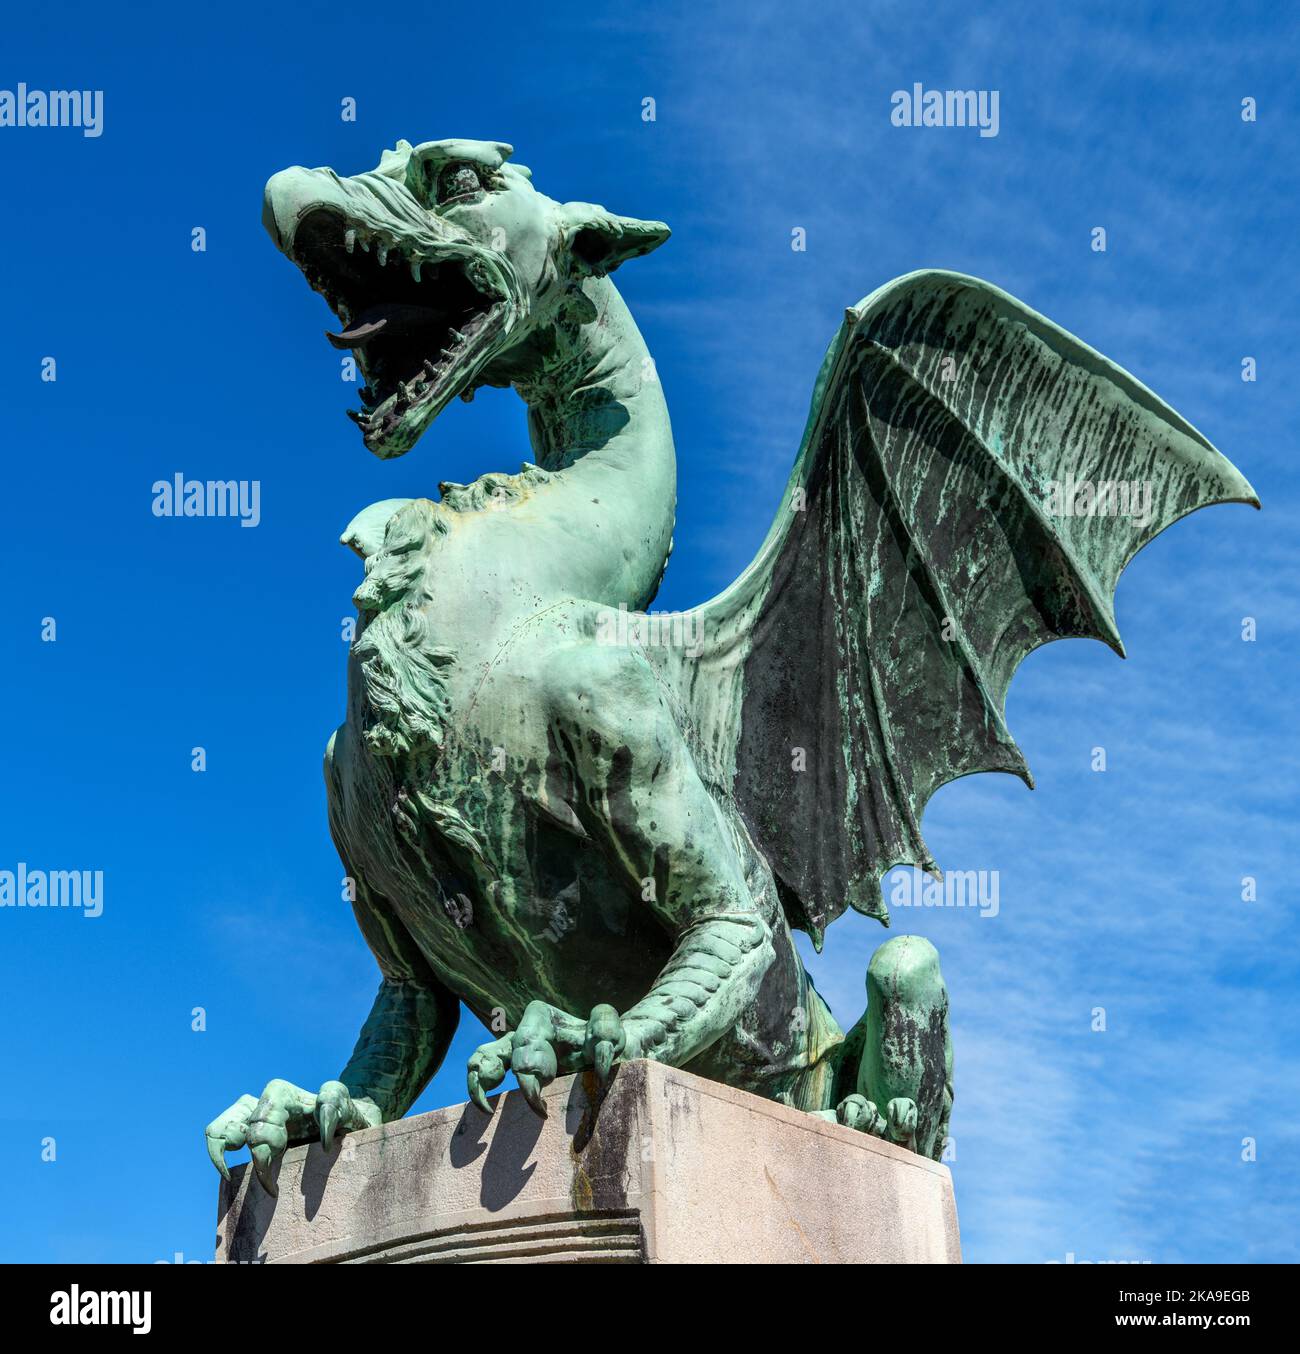 Centro del drago immagini e fotografie stock ad alta risoluzione - Alamy